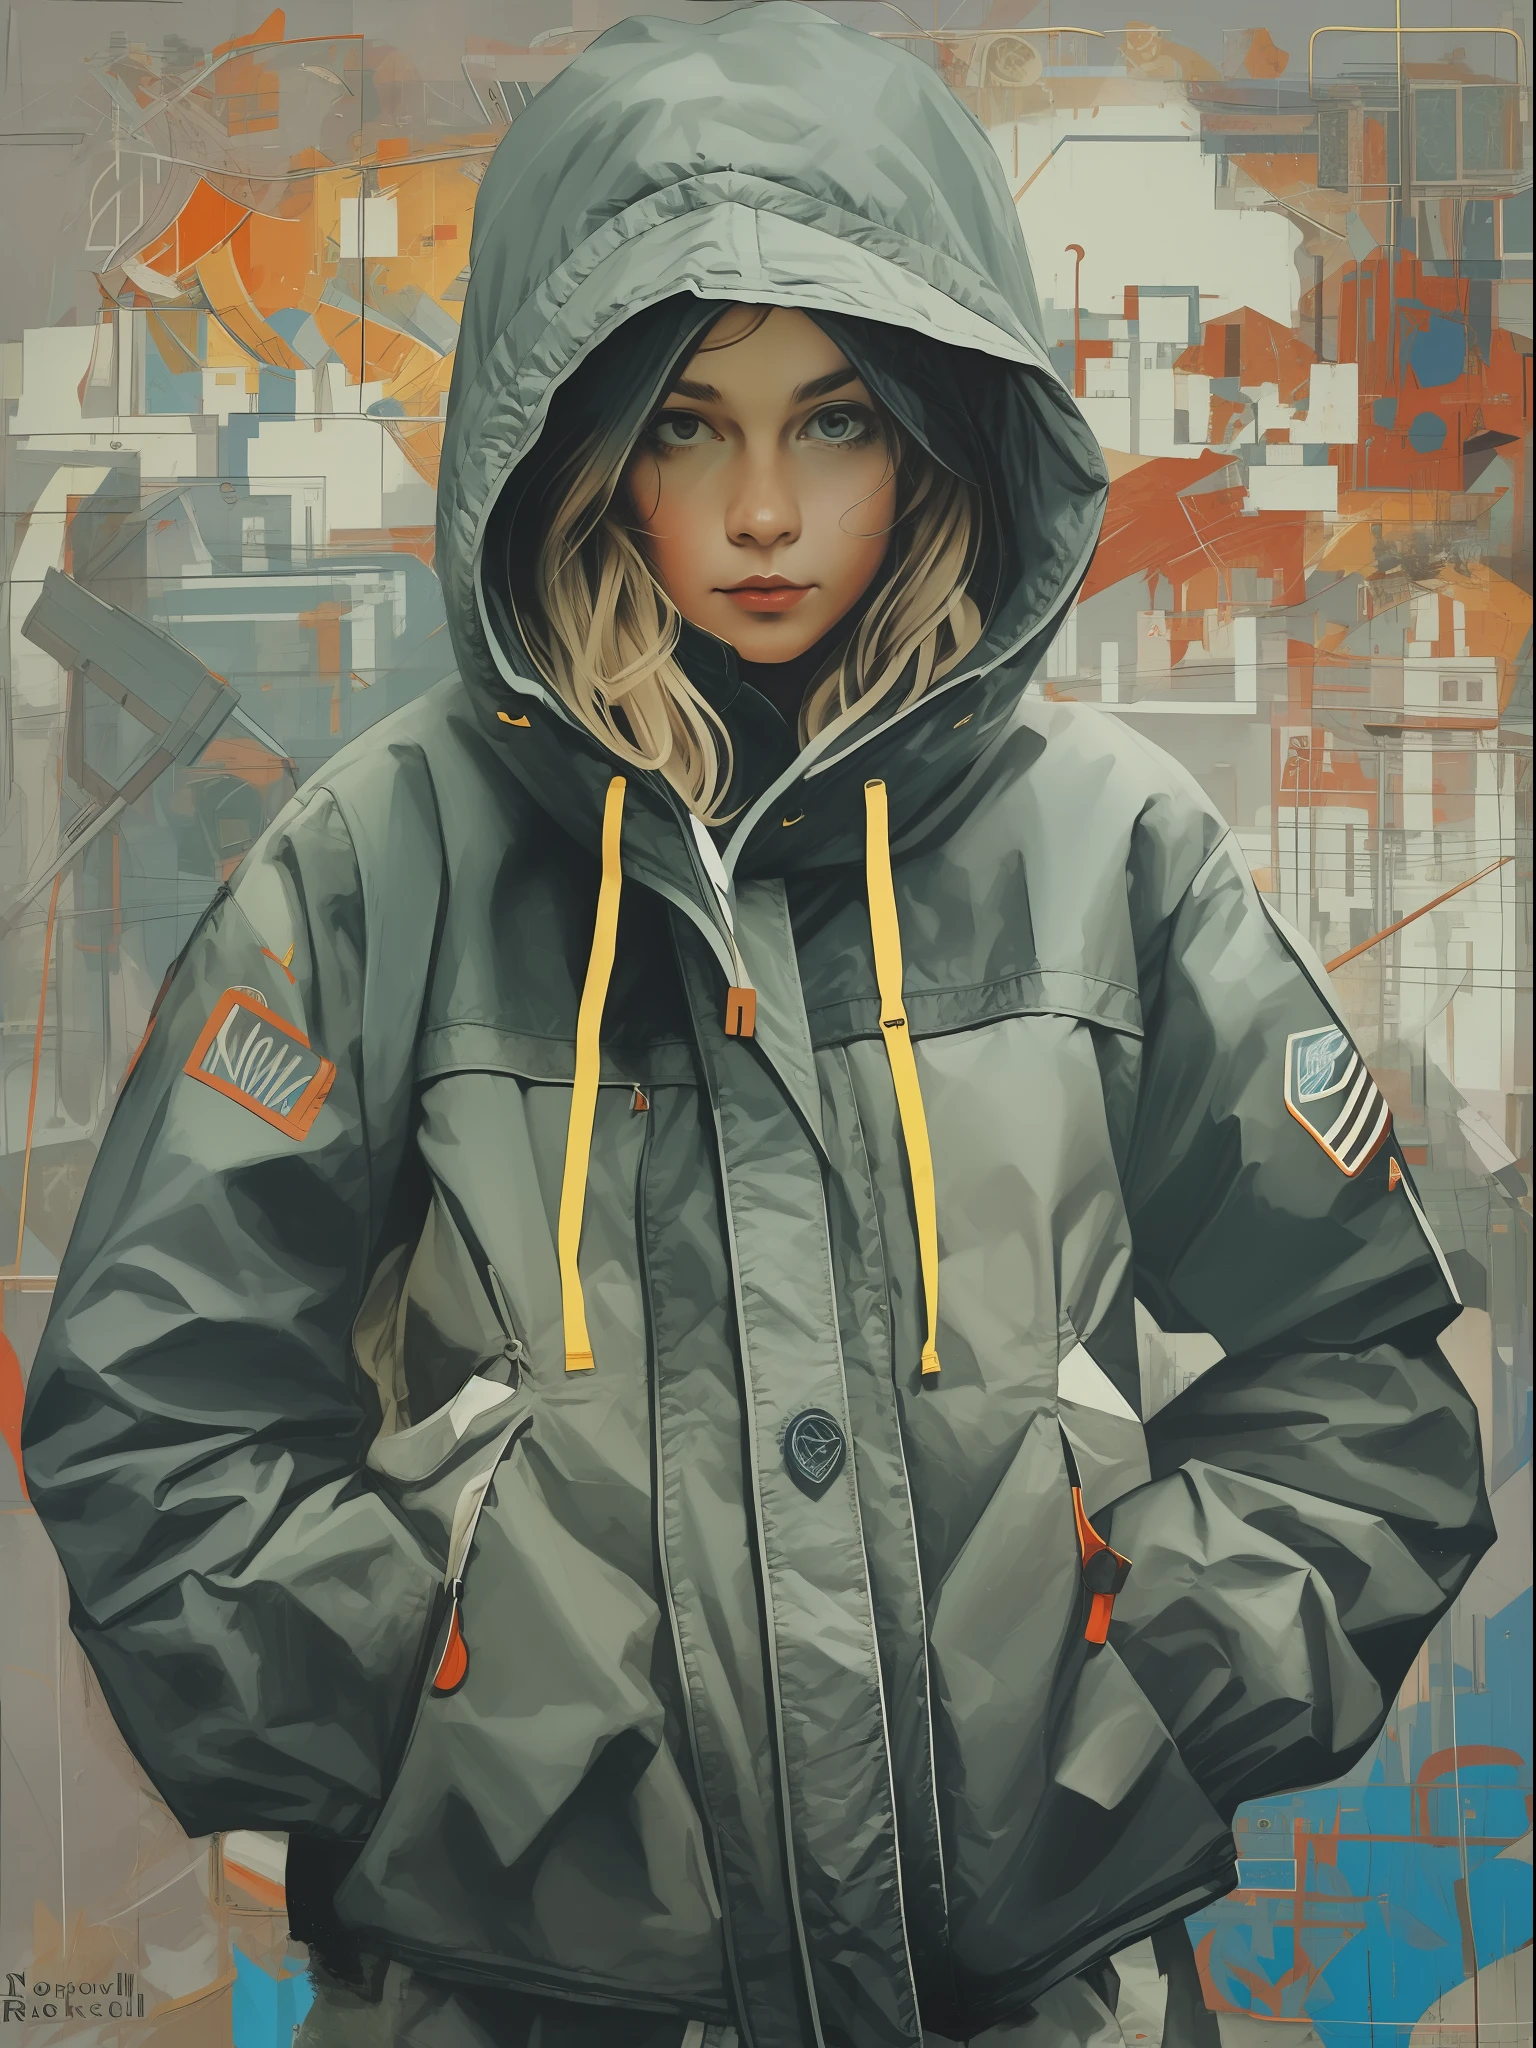 1 穿着机能夹克的可爱女孩, 带兜帽, 抽象的背景, 受诺曼·洛克威尔启发的艺术.